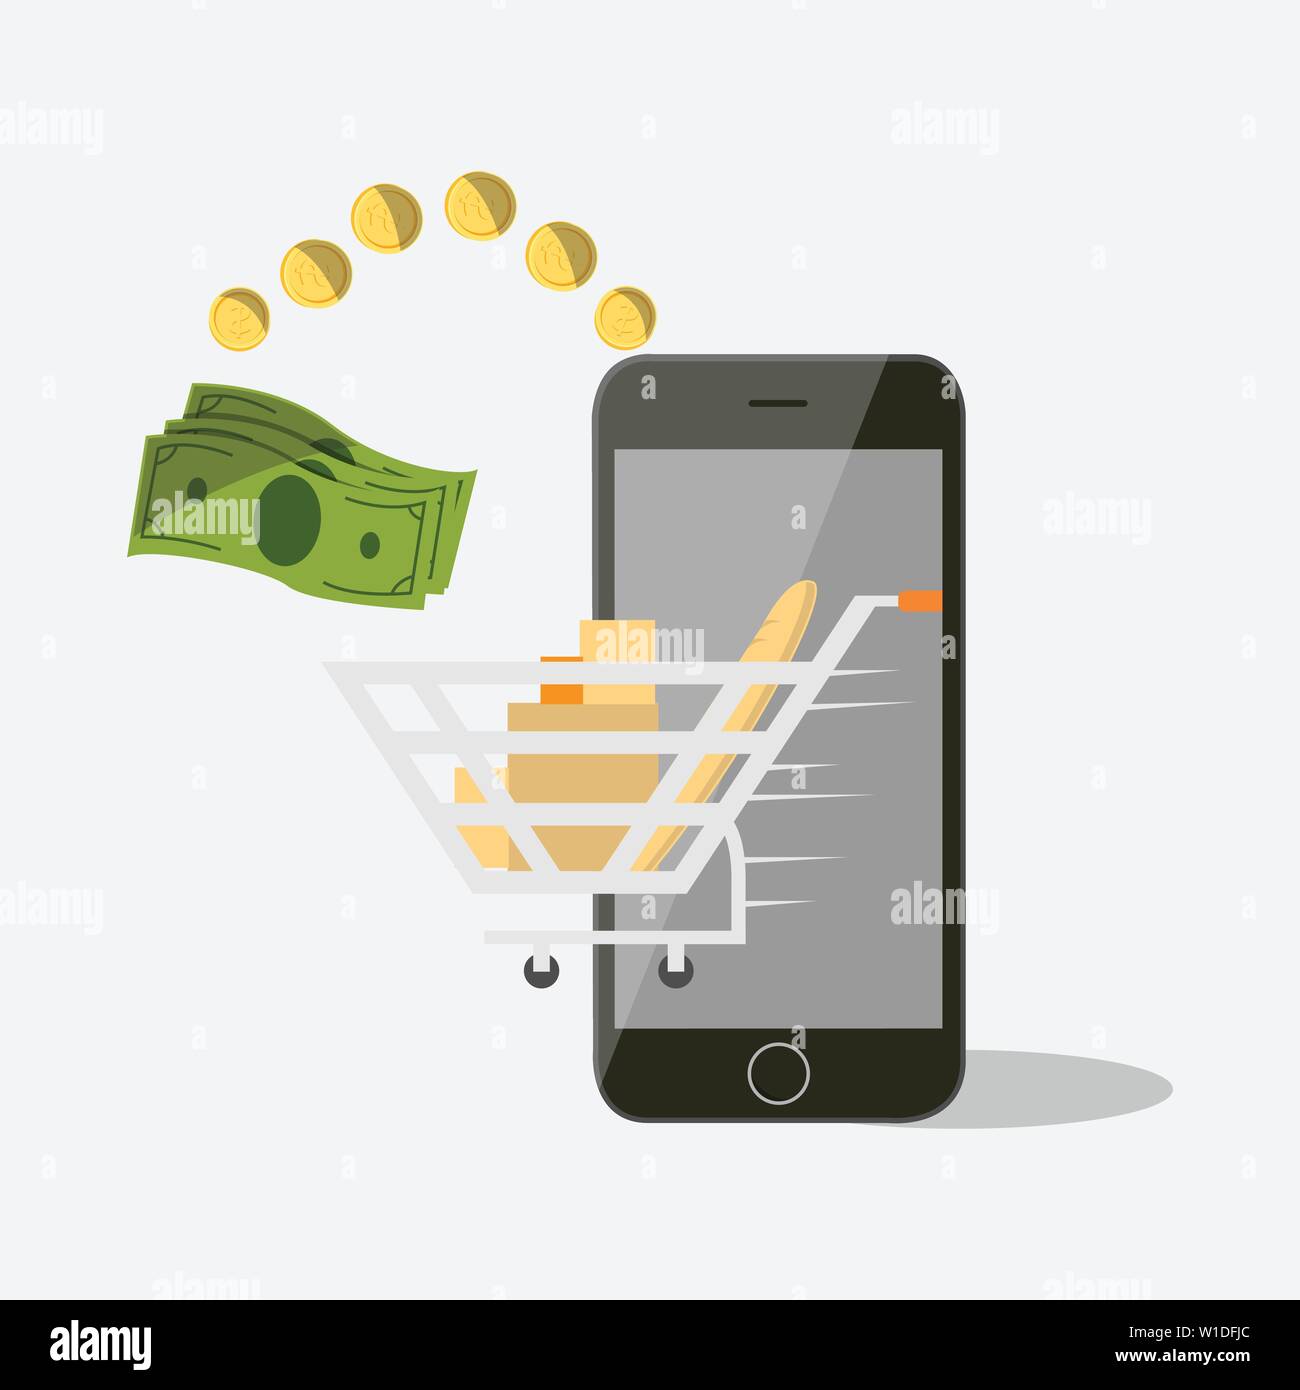 Le paiement mobile set vector illustration isolé. Paiement NFC, le transfert d'argent via smartphone app, transactions bancaires et achats en ligne Illustration de Vecteur